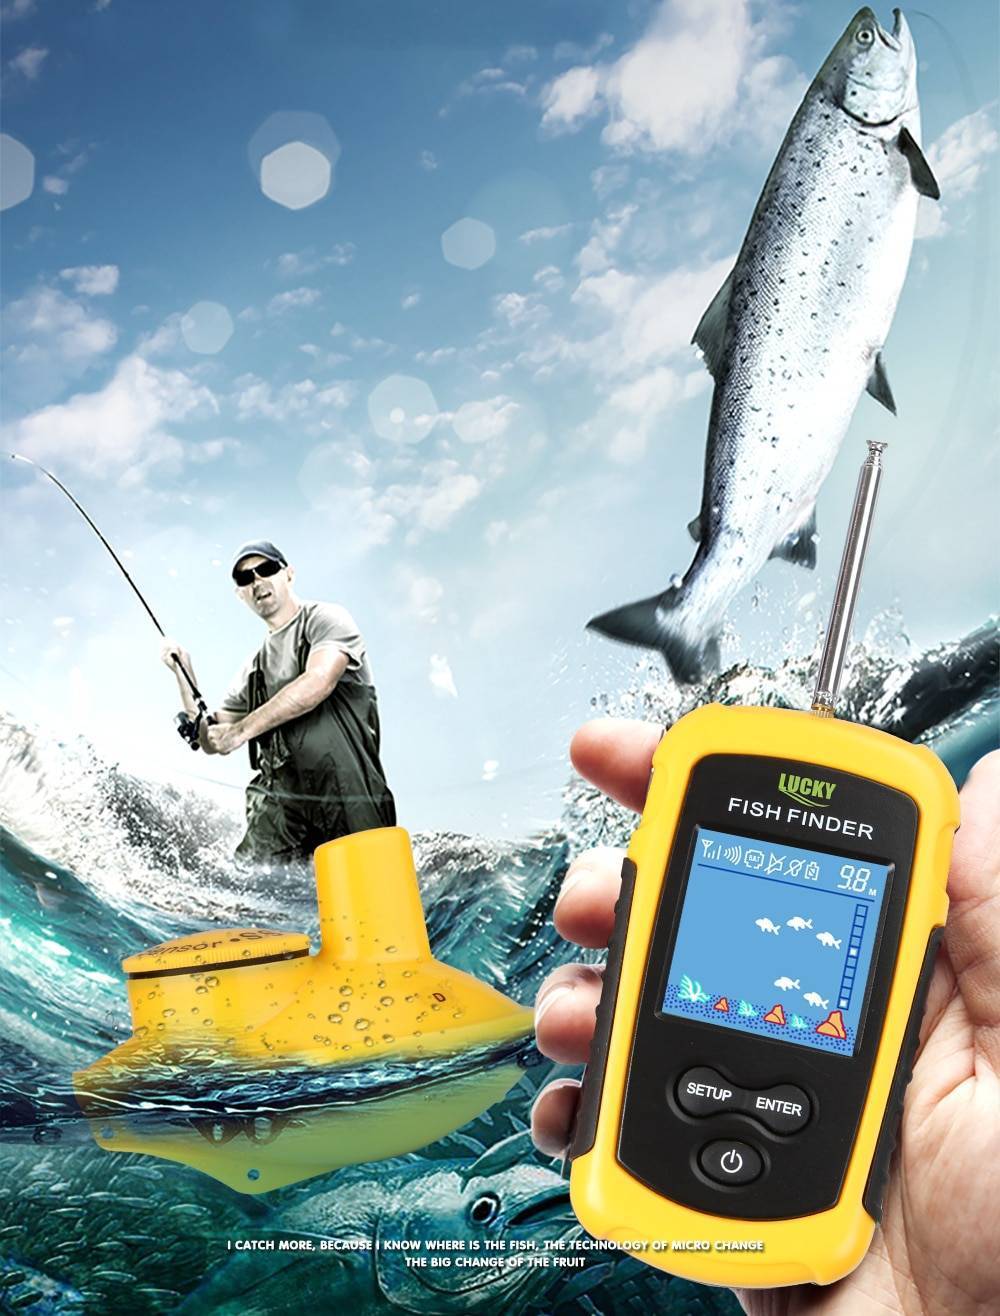 Беспроводной эхолот lucky fish finder: как пользоваться, плюсы и минусы, отзывы рыбаков | berlogakarelia.ru